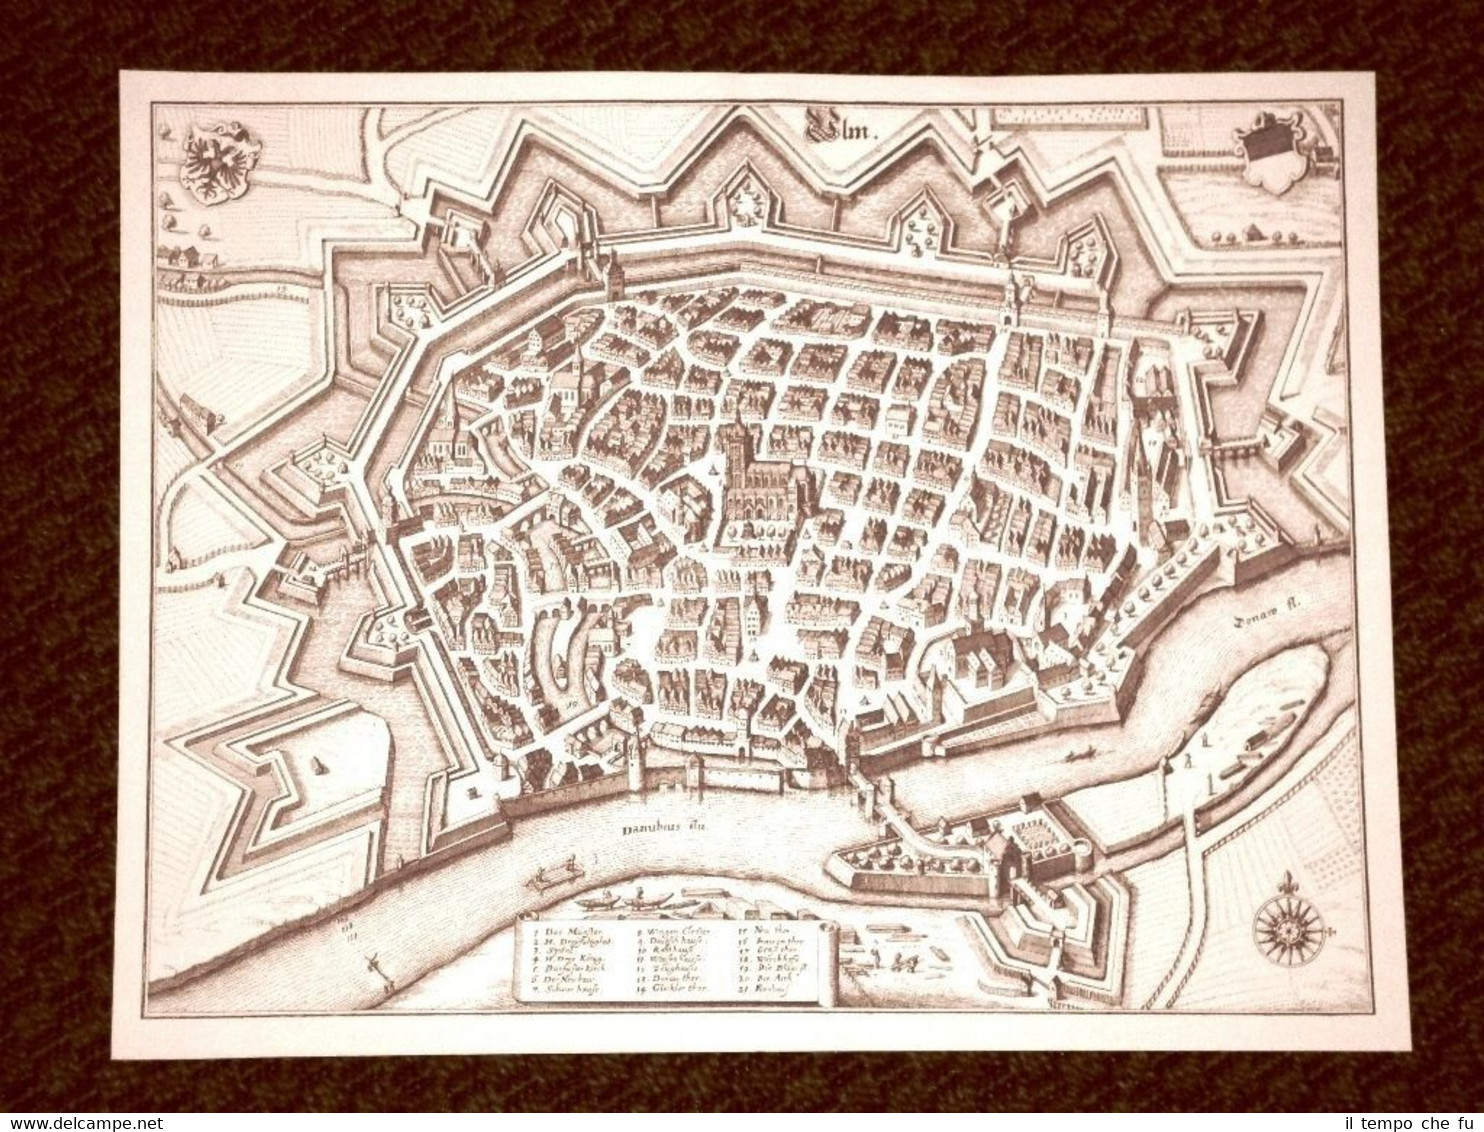 Ulma - Ulm Germania Incisione di Merian Matthäus del 1640 …